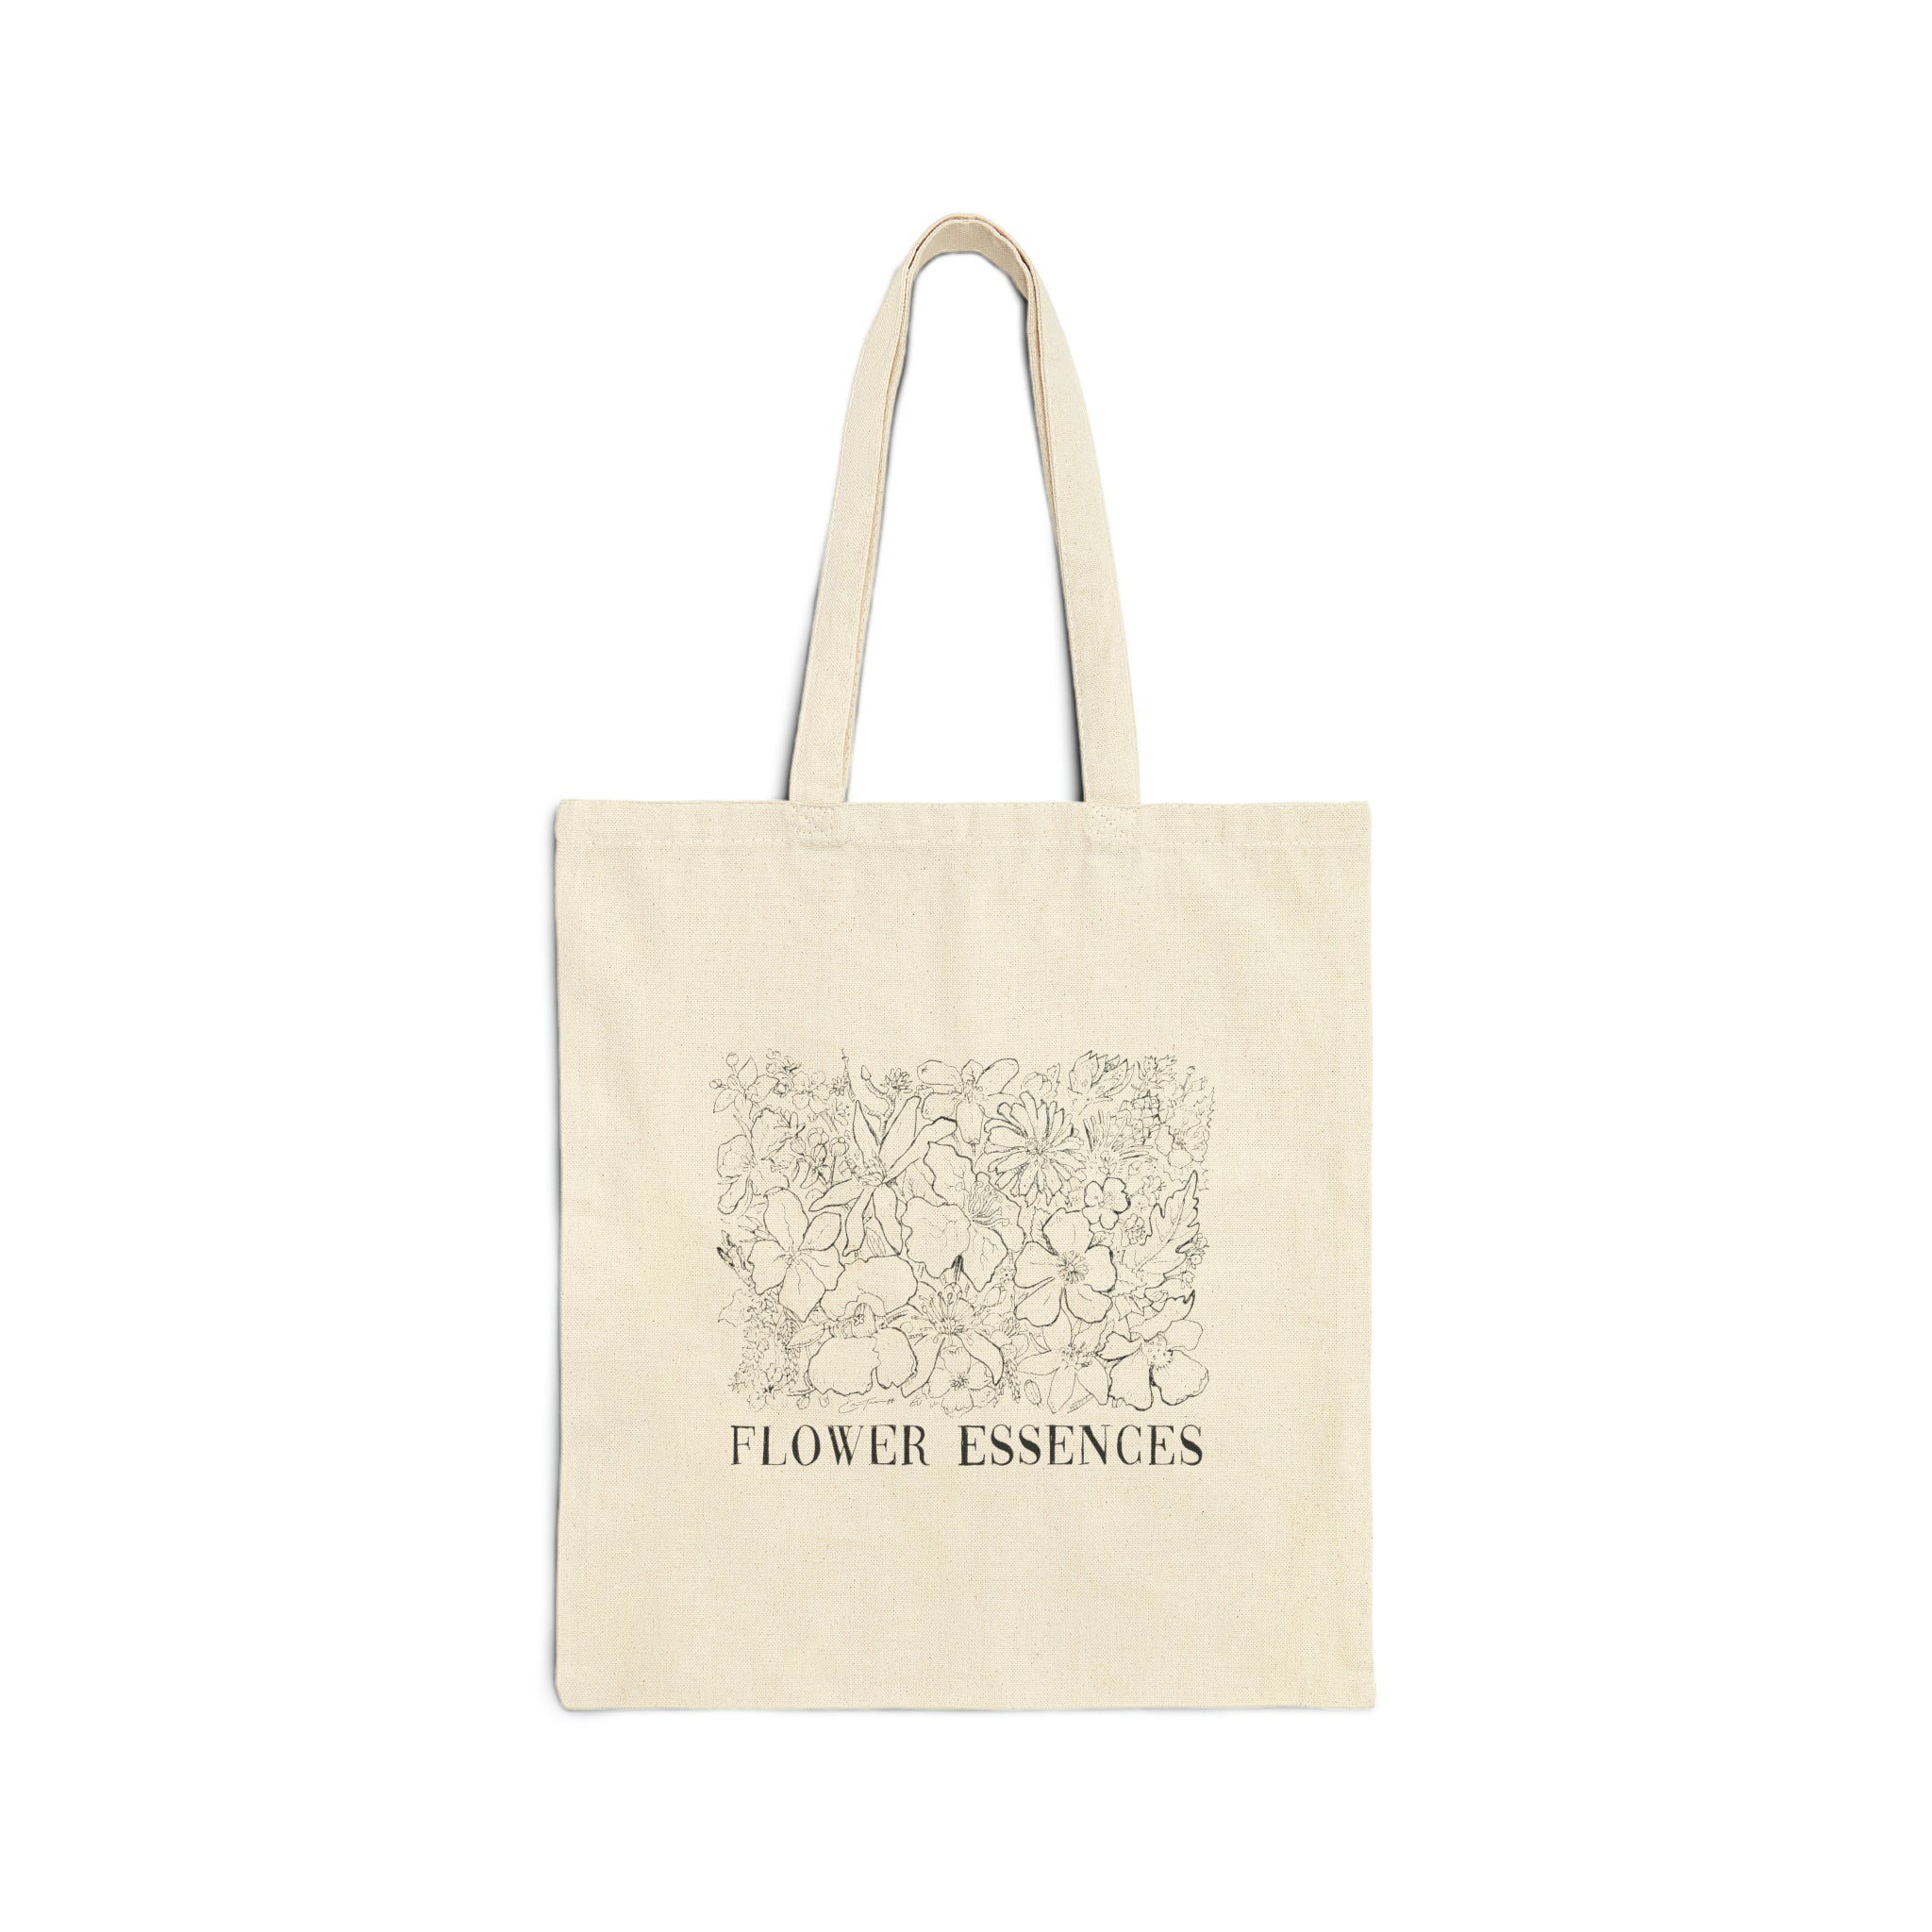 'Flower Essences' Cotton Canvas Tote Bag